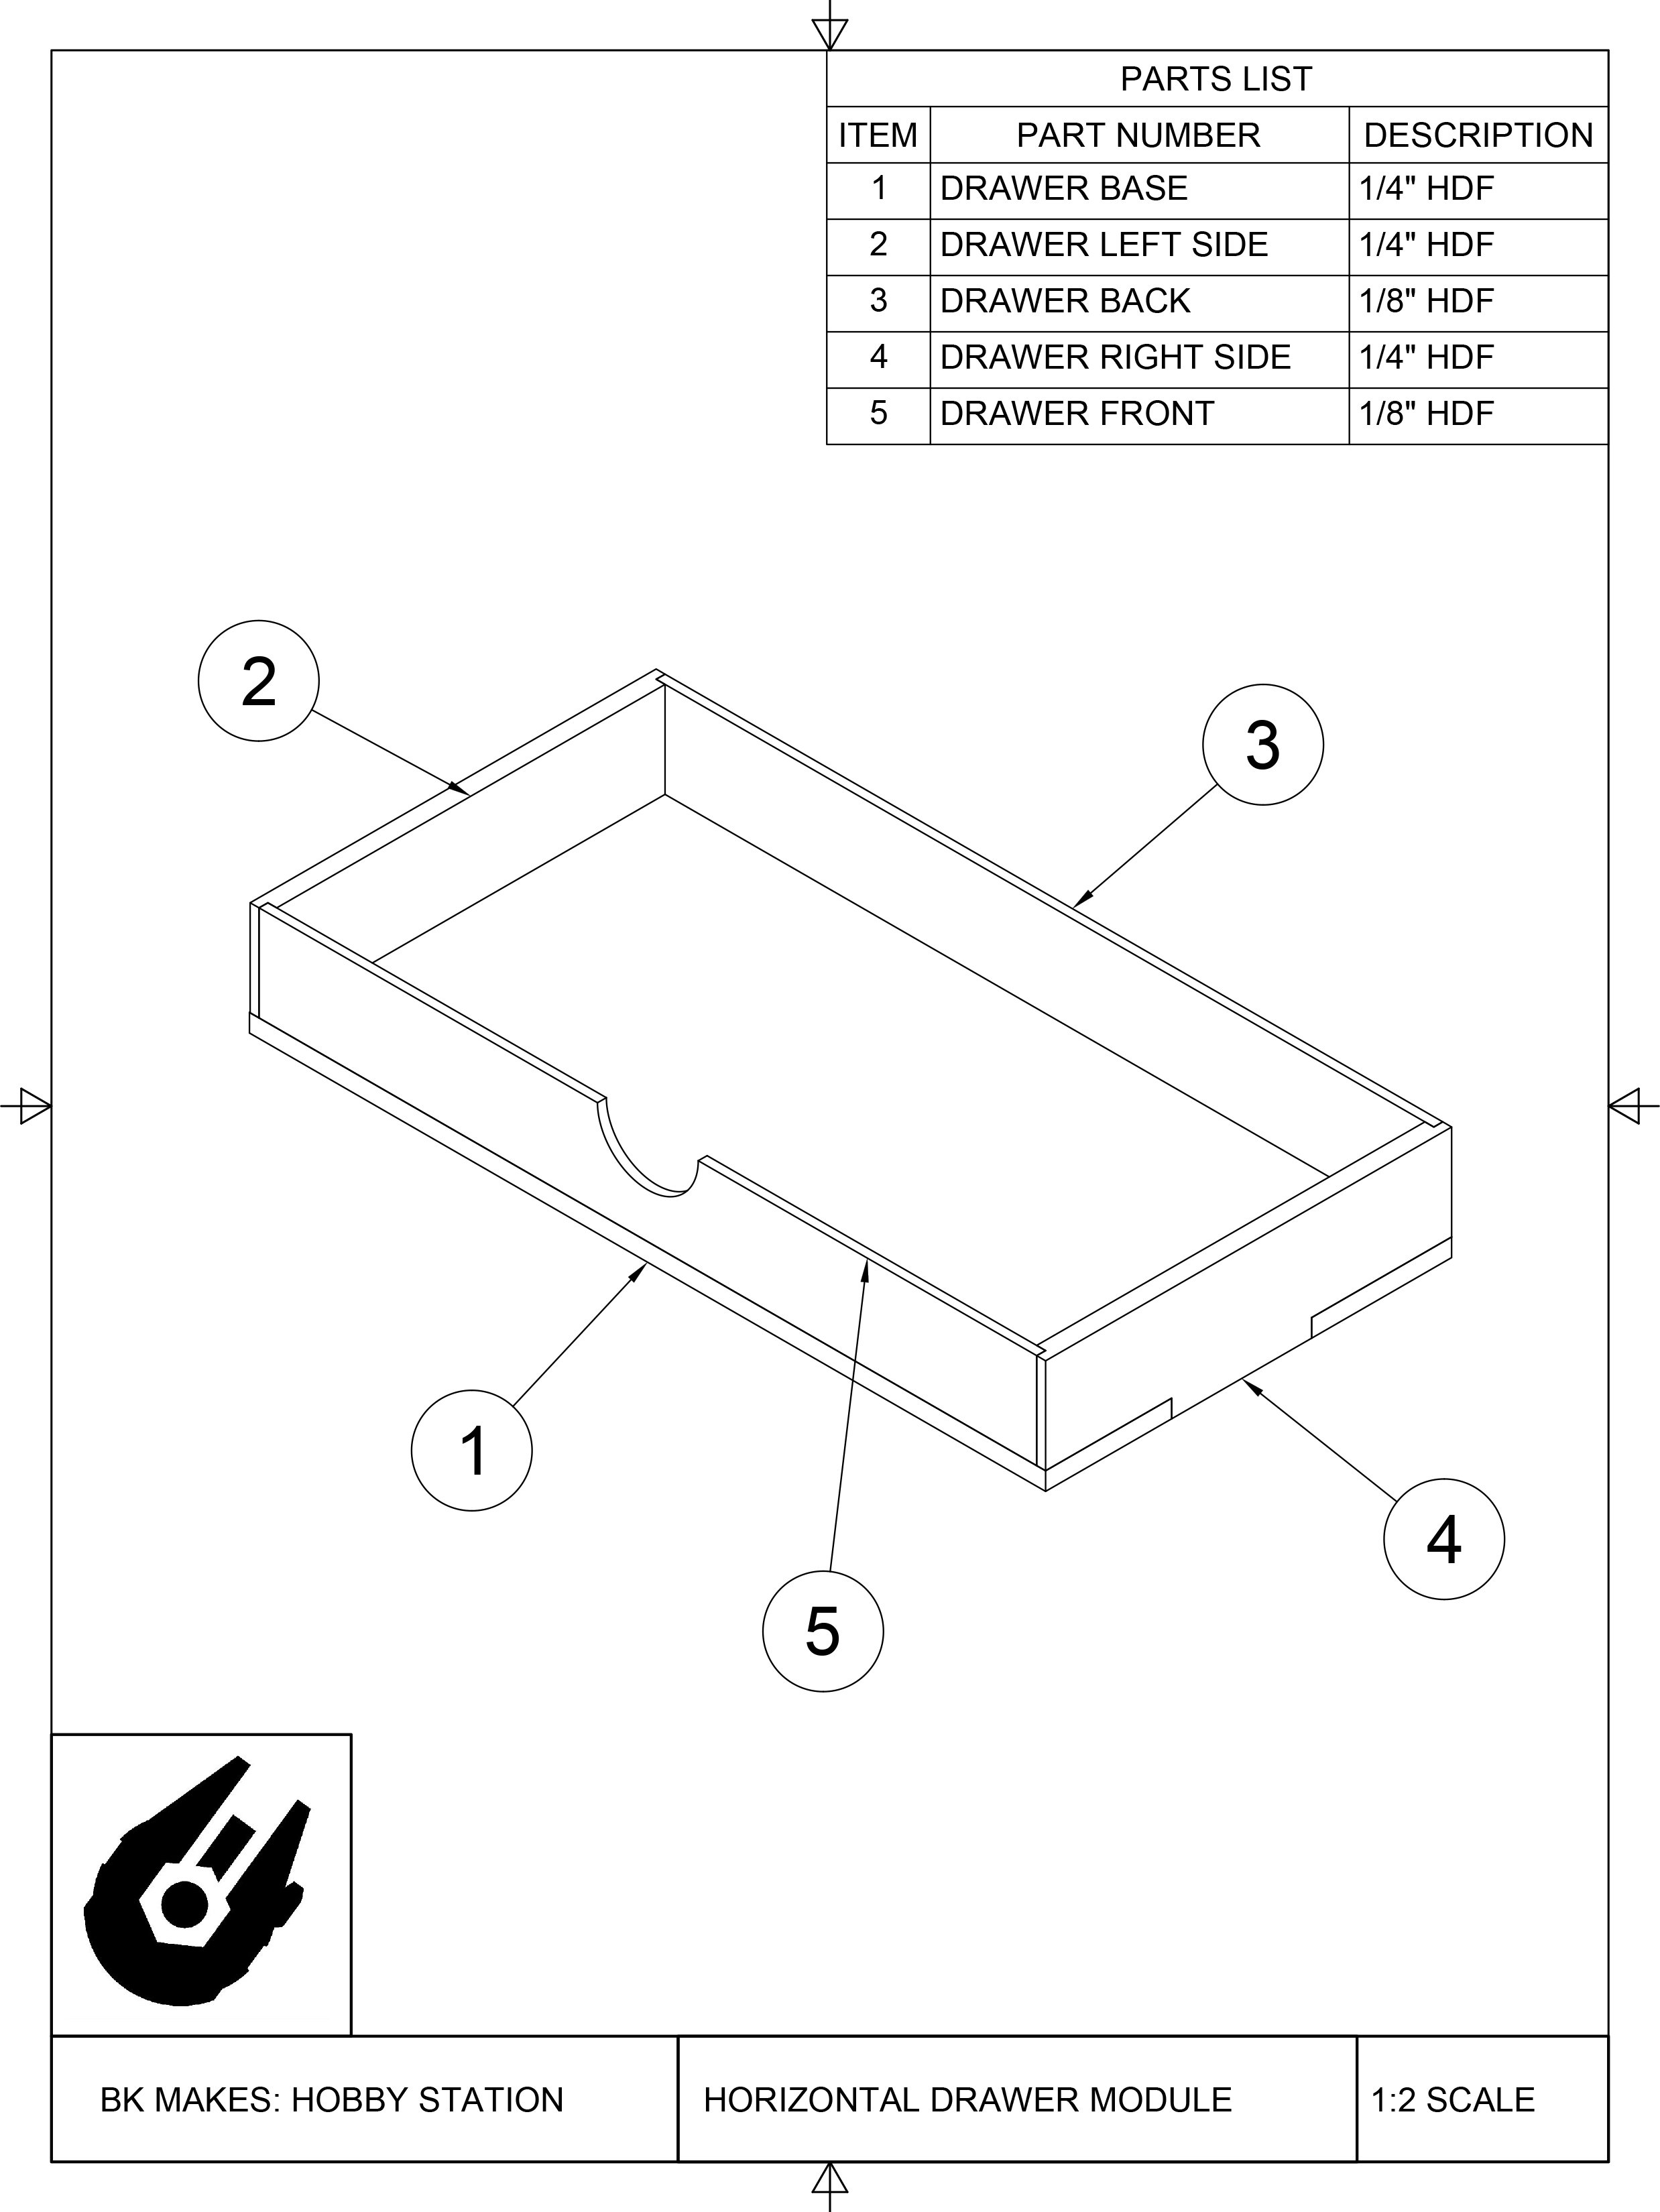 BK MAKES Horizontal Drawer for 3-Drawer Module Assembly Sheet.jpg